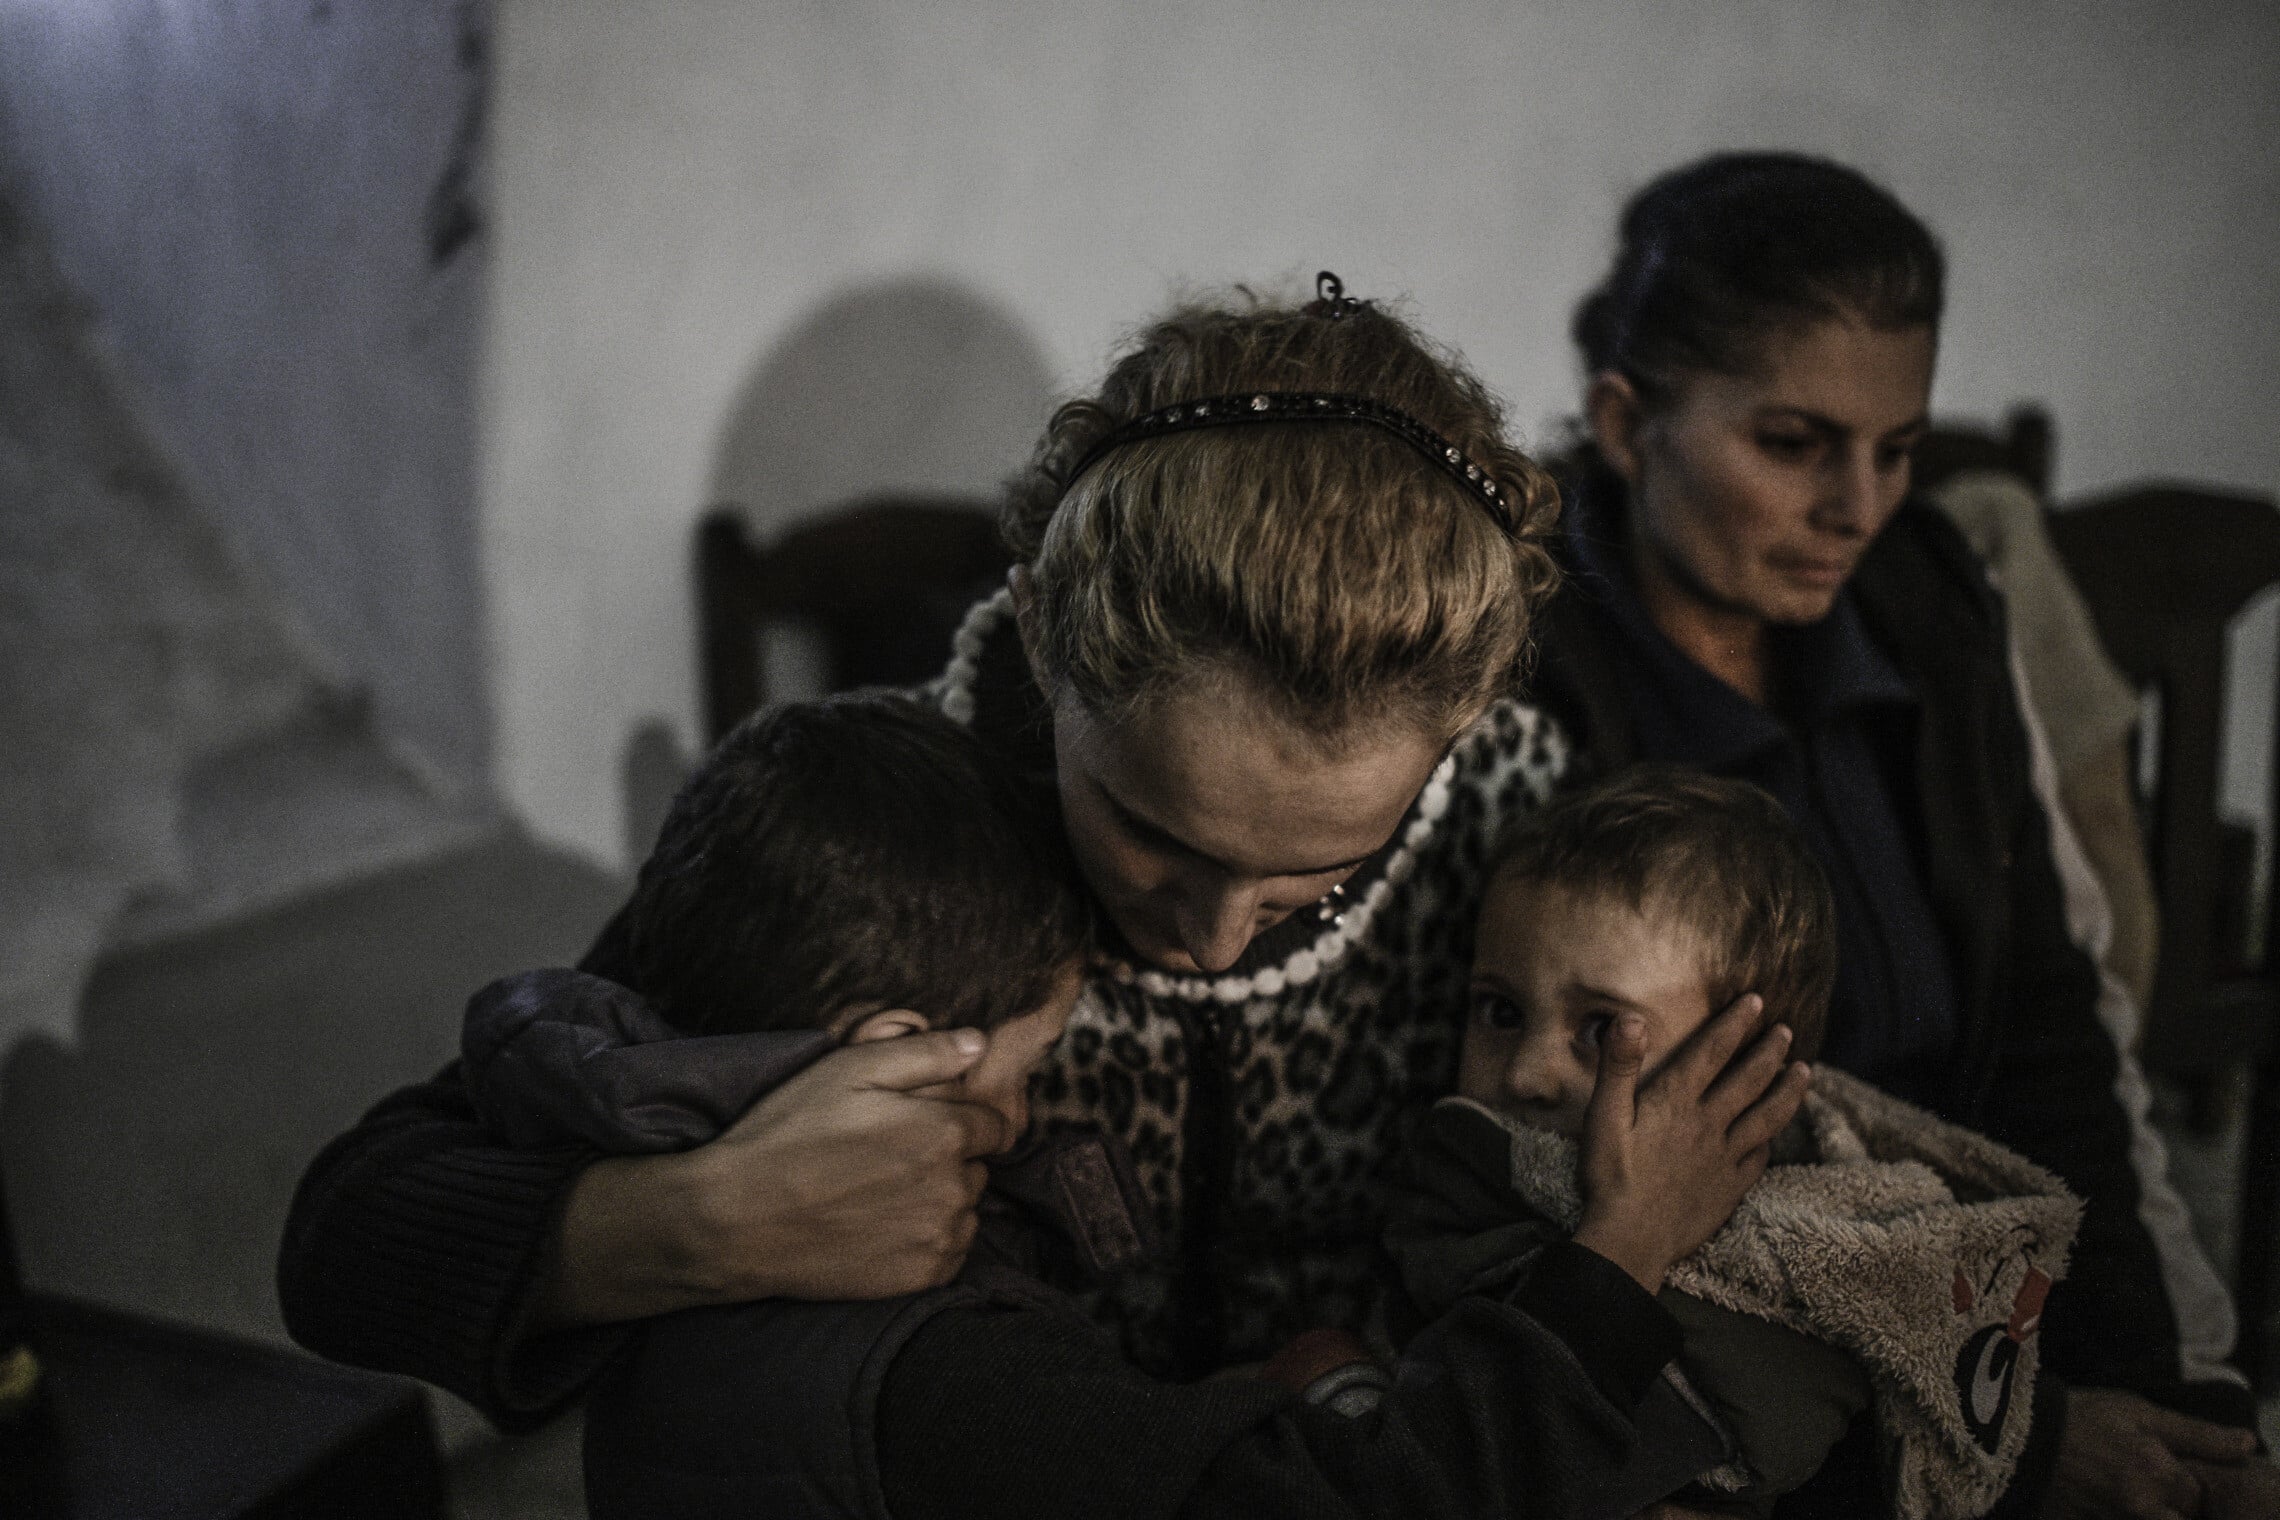 משפחה ארמנית במקלט בעיר שושה תחילת אוקטובר 2020 (צילום: גילעד שדה)